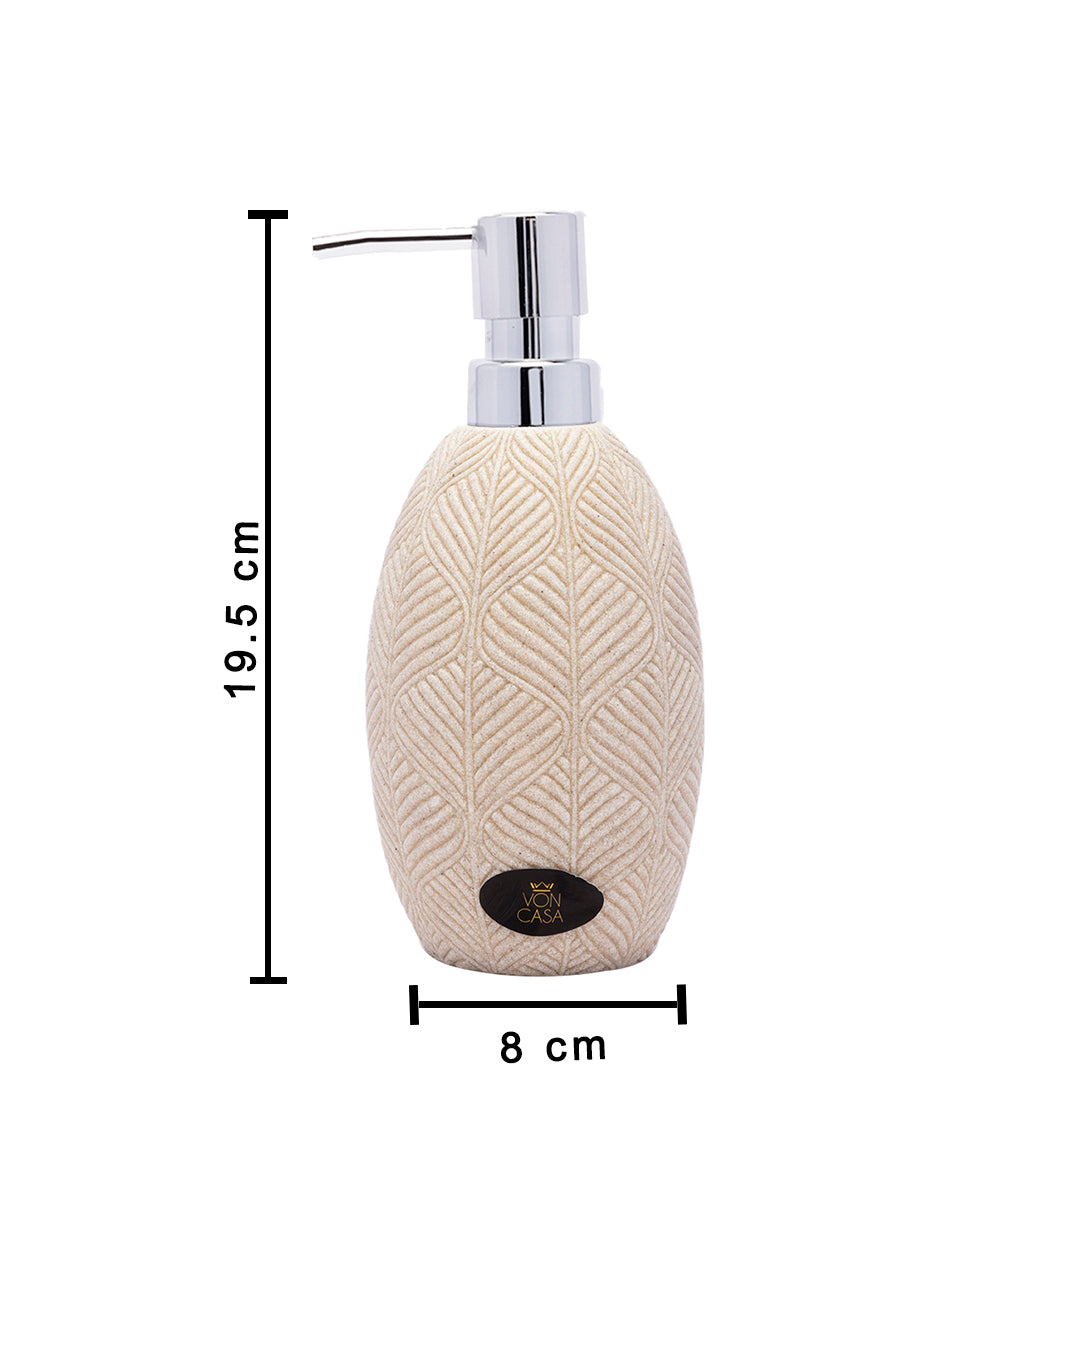 VON CASA Soap Dispenser - 300 mL